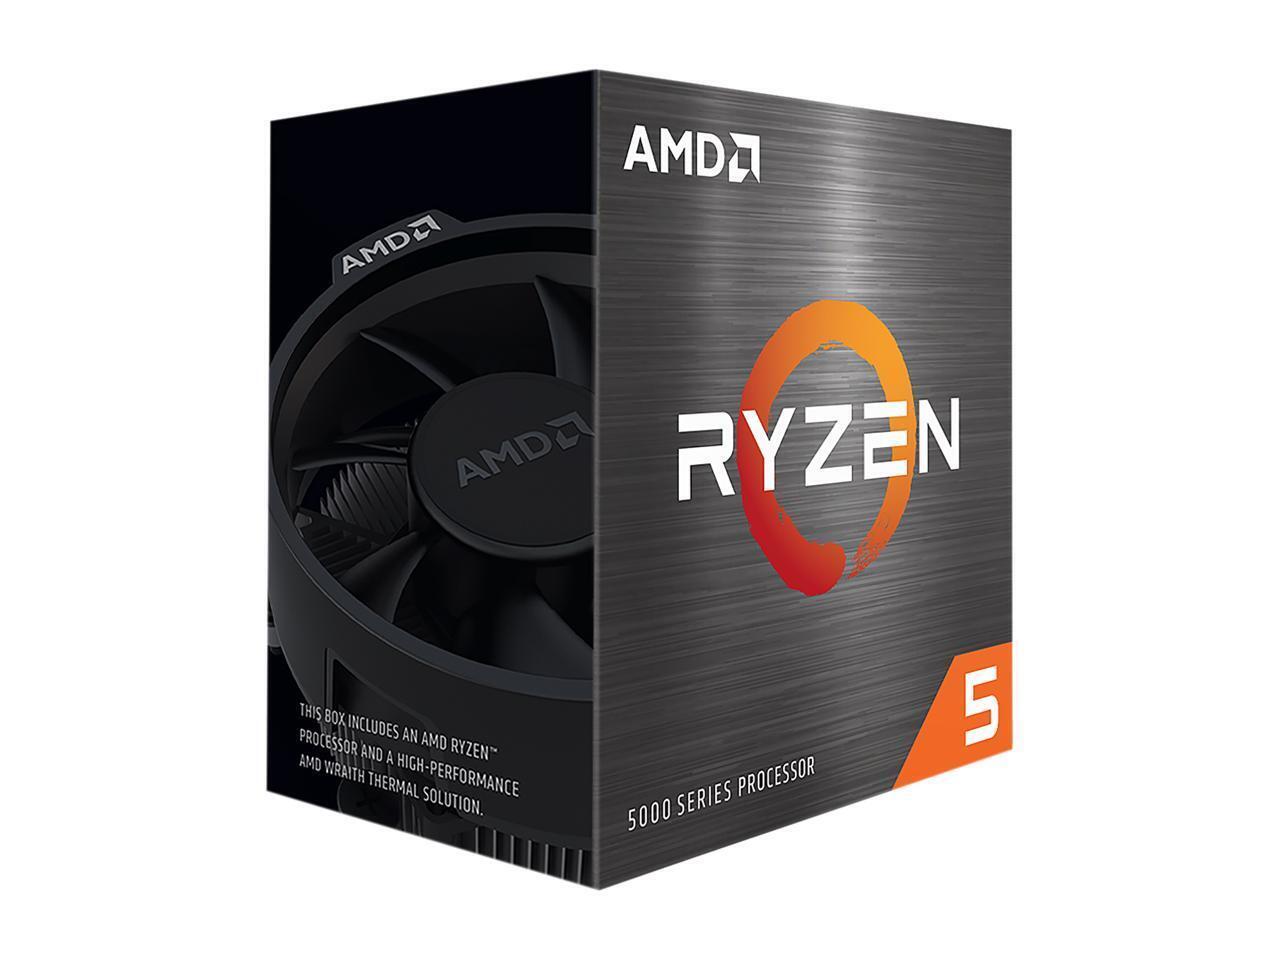 AMD Ryzen 5 5500 - Ryzen 5 5000 Series 6-Core Socket AM4 65W Desktop Processor